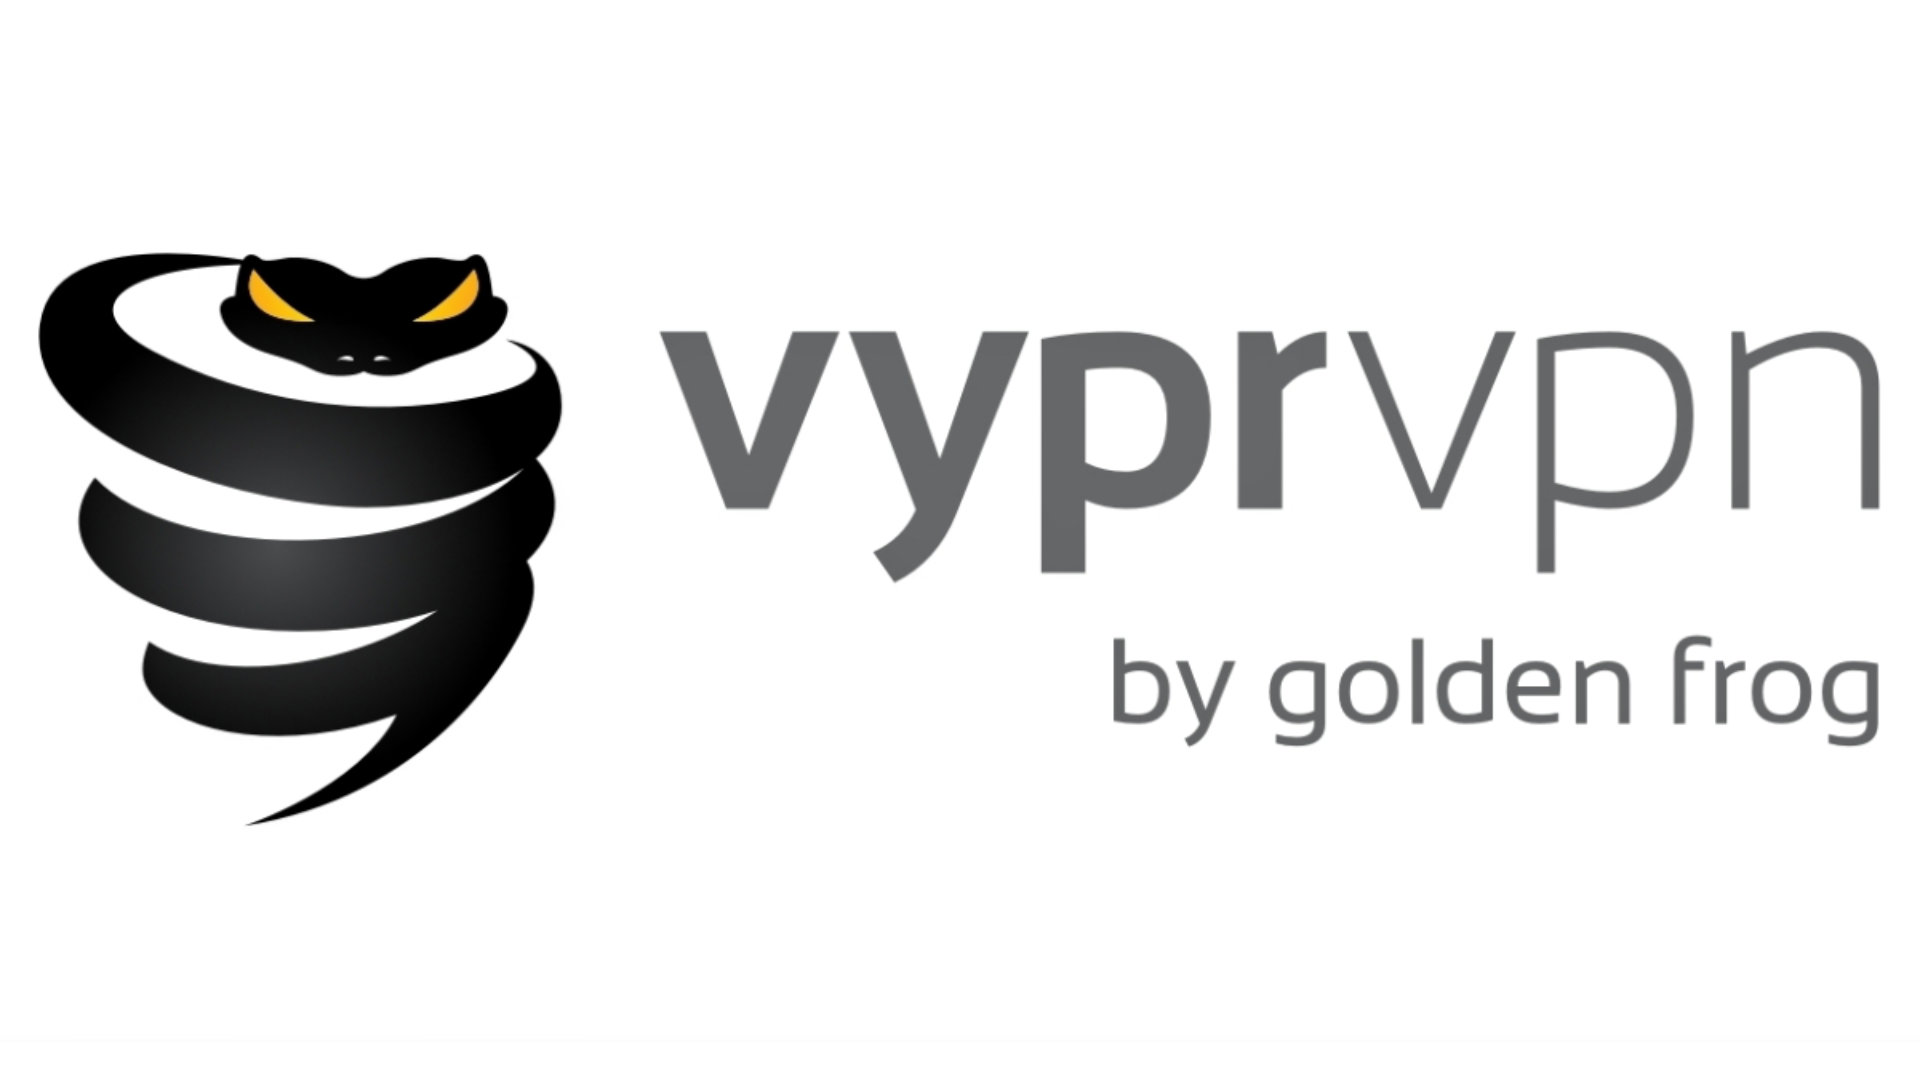 The best VPN for gaming: Golden Frog's VyprVPN sports a coiled snake for its logo